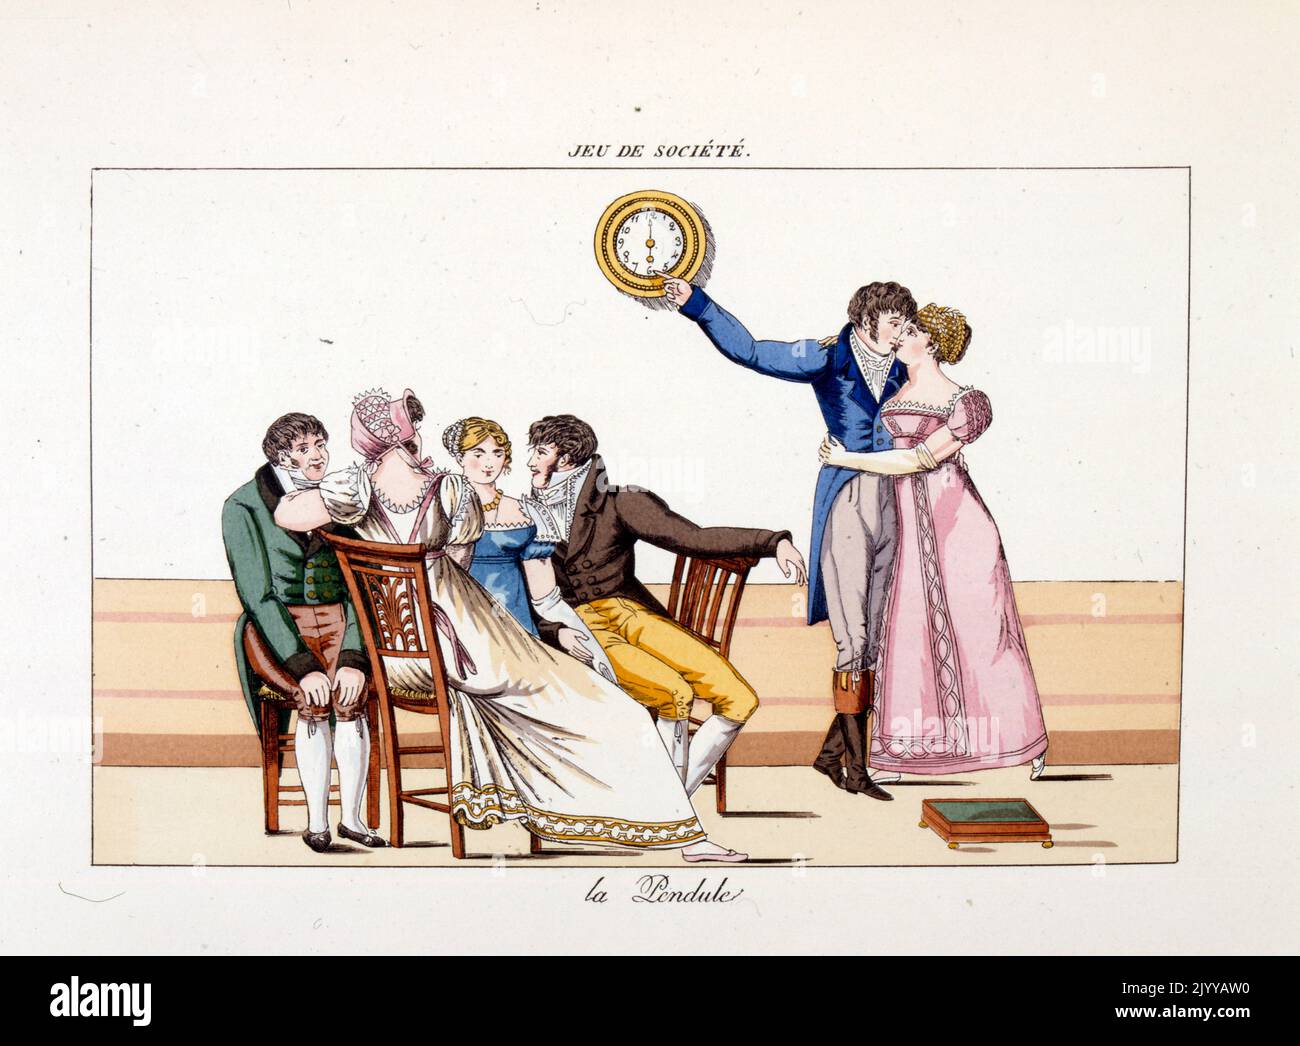 Acquerello Illustrazione intitolata 'l'orologio'. L'immagine mostra una coppia che bacia mentre gli altri si siedono e parlano. Foto Stock